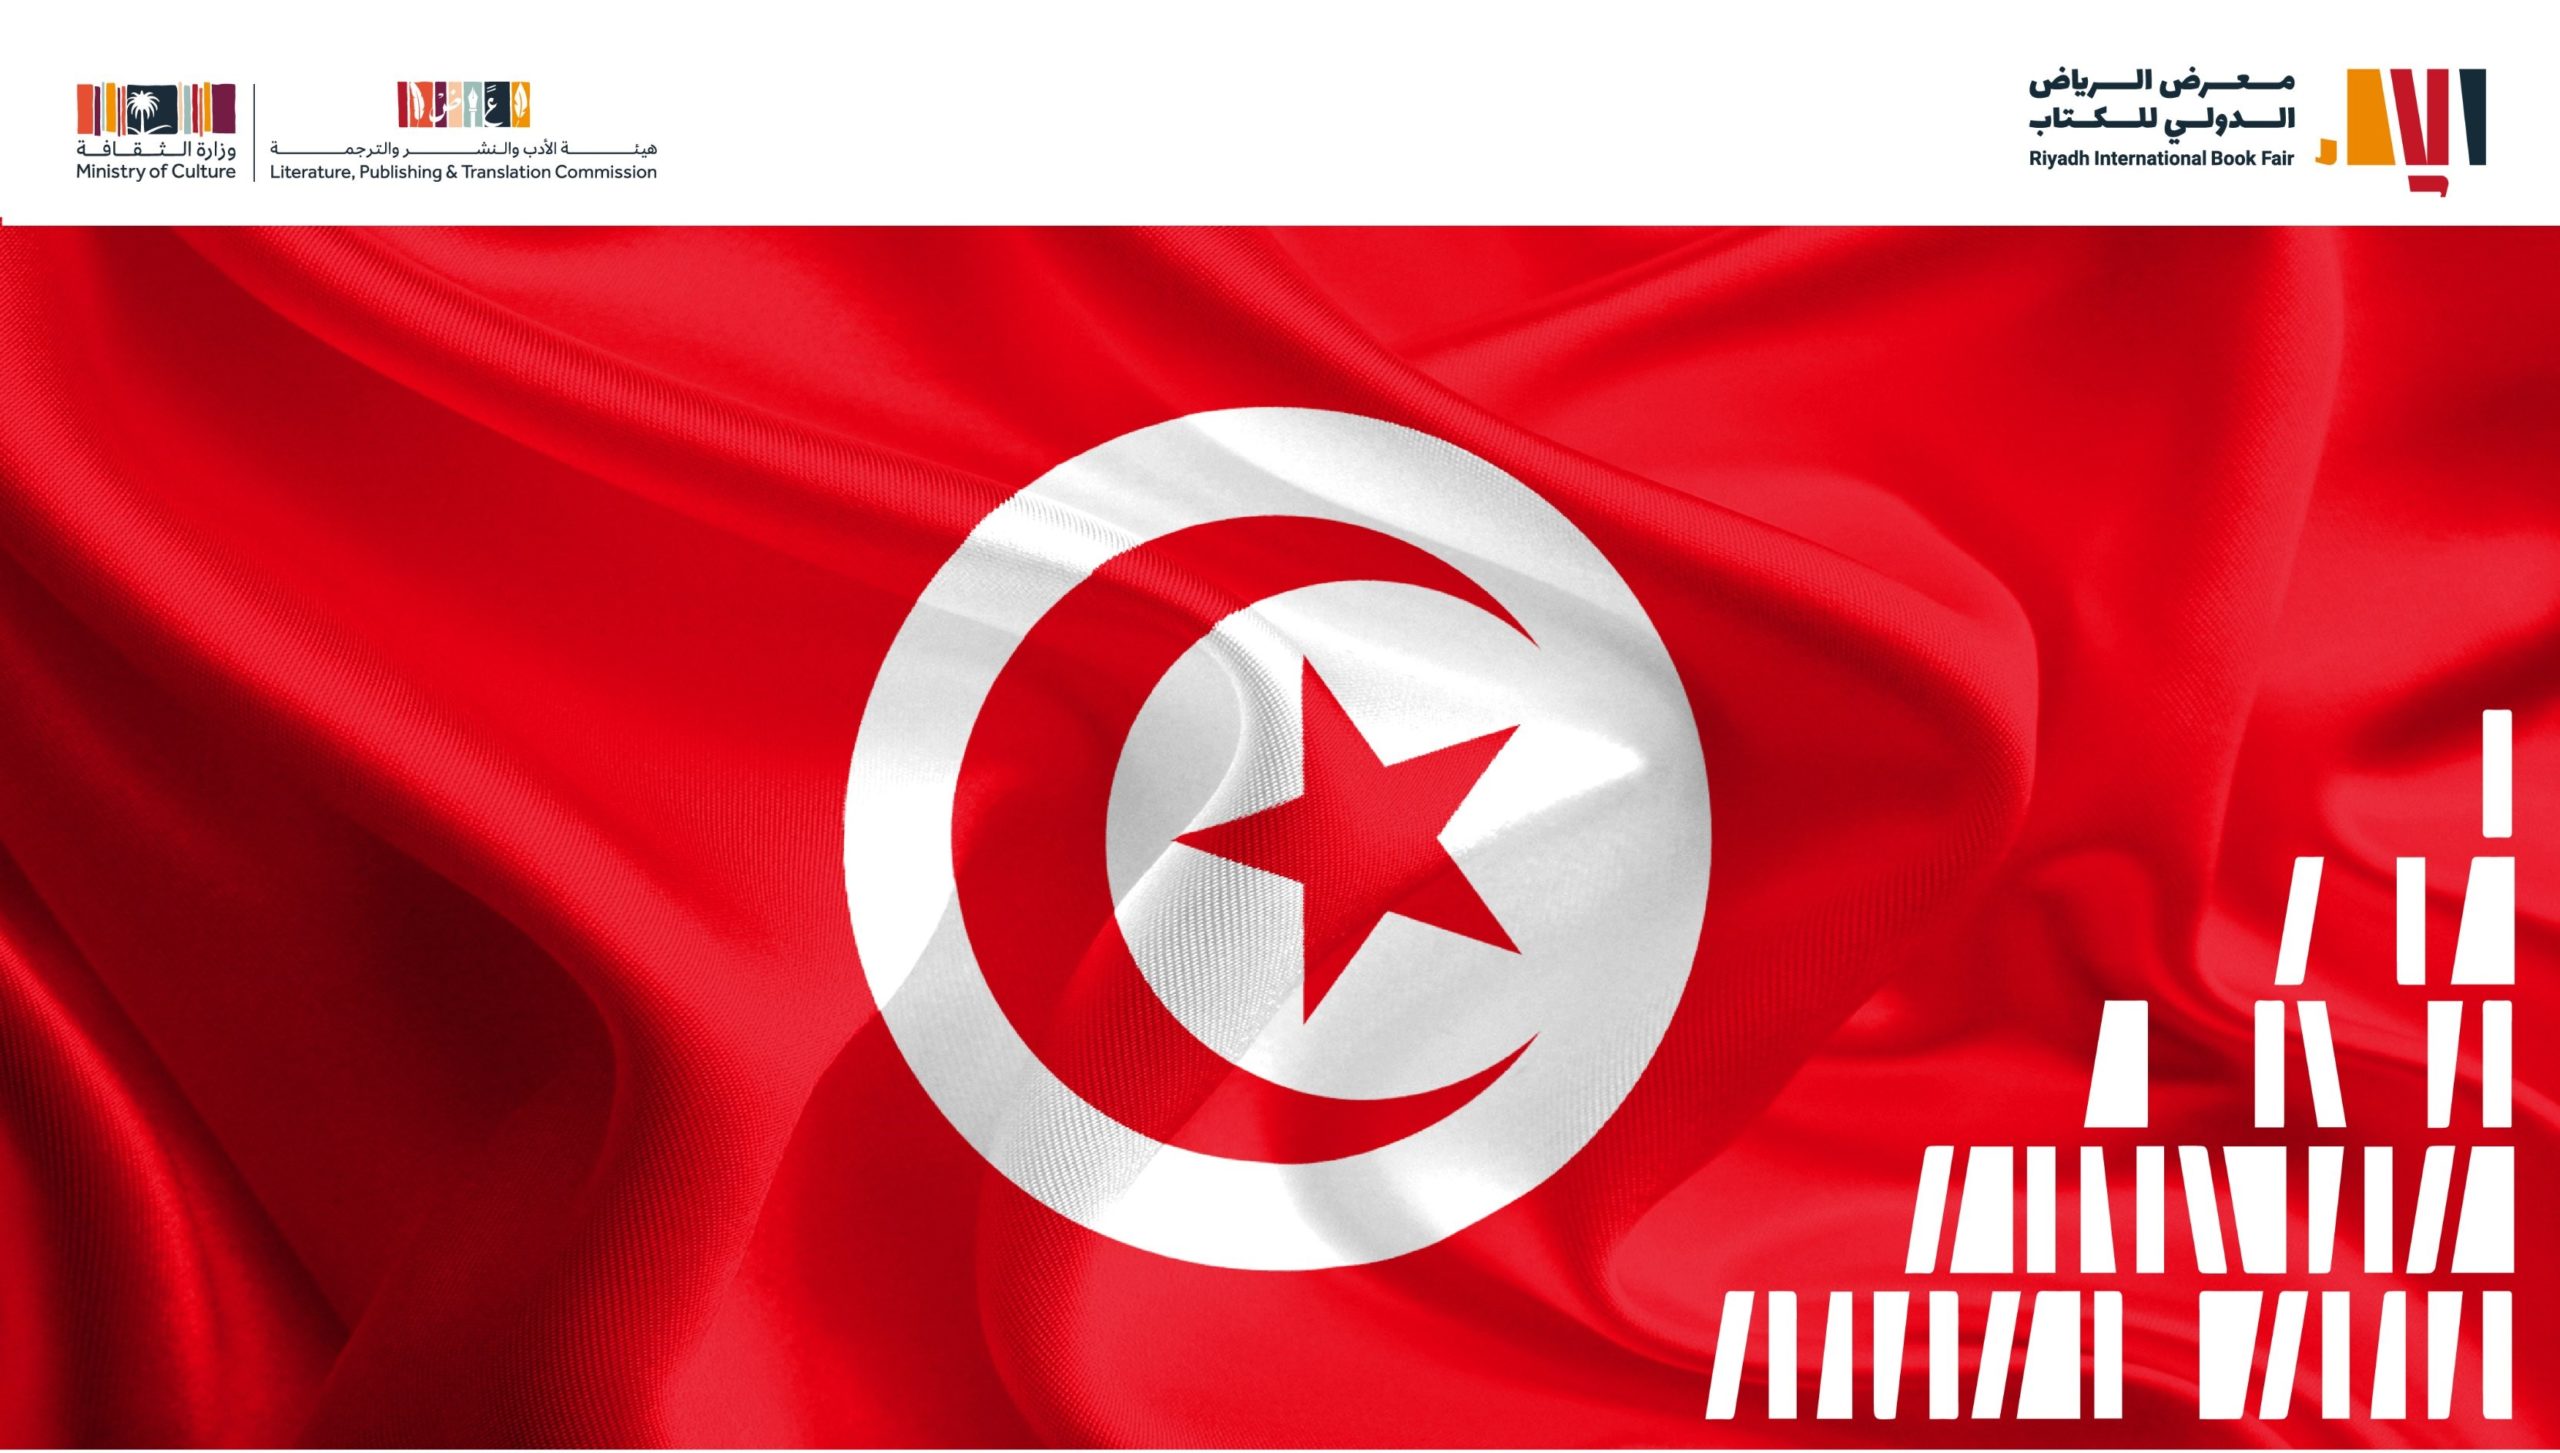 تونس ضيف شرف الدورة المقبلة لمعرض الرياض الدولي للكتاب